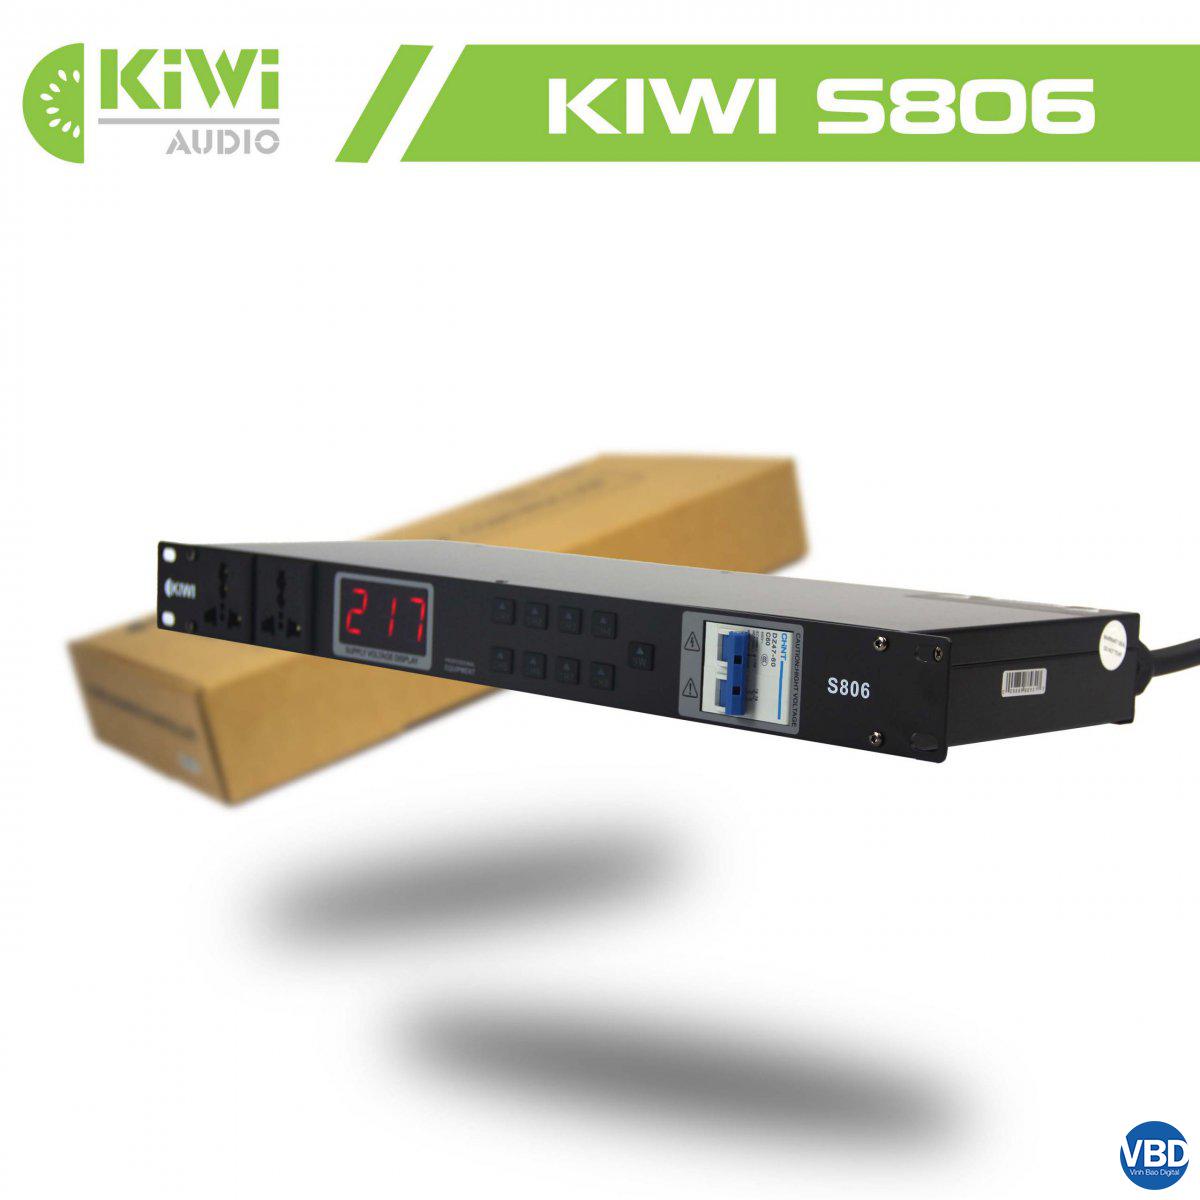 1Thiết bị quản lý nguồn điện tự động KIWI S806 công nghệ hiện đại